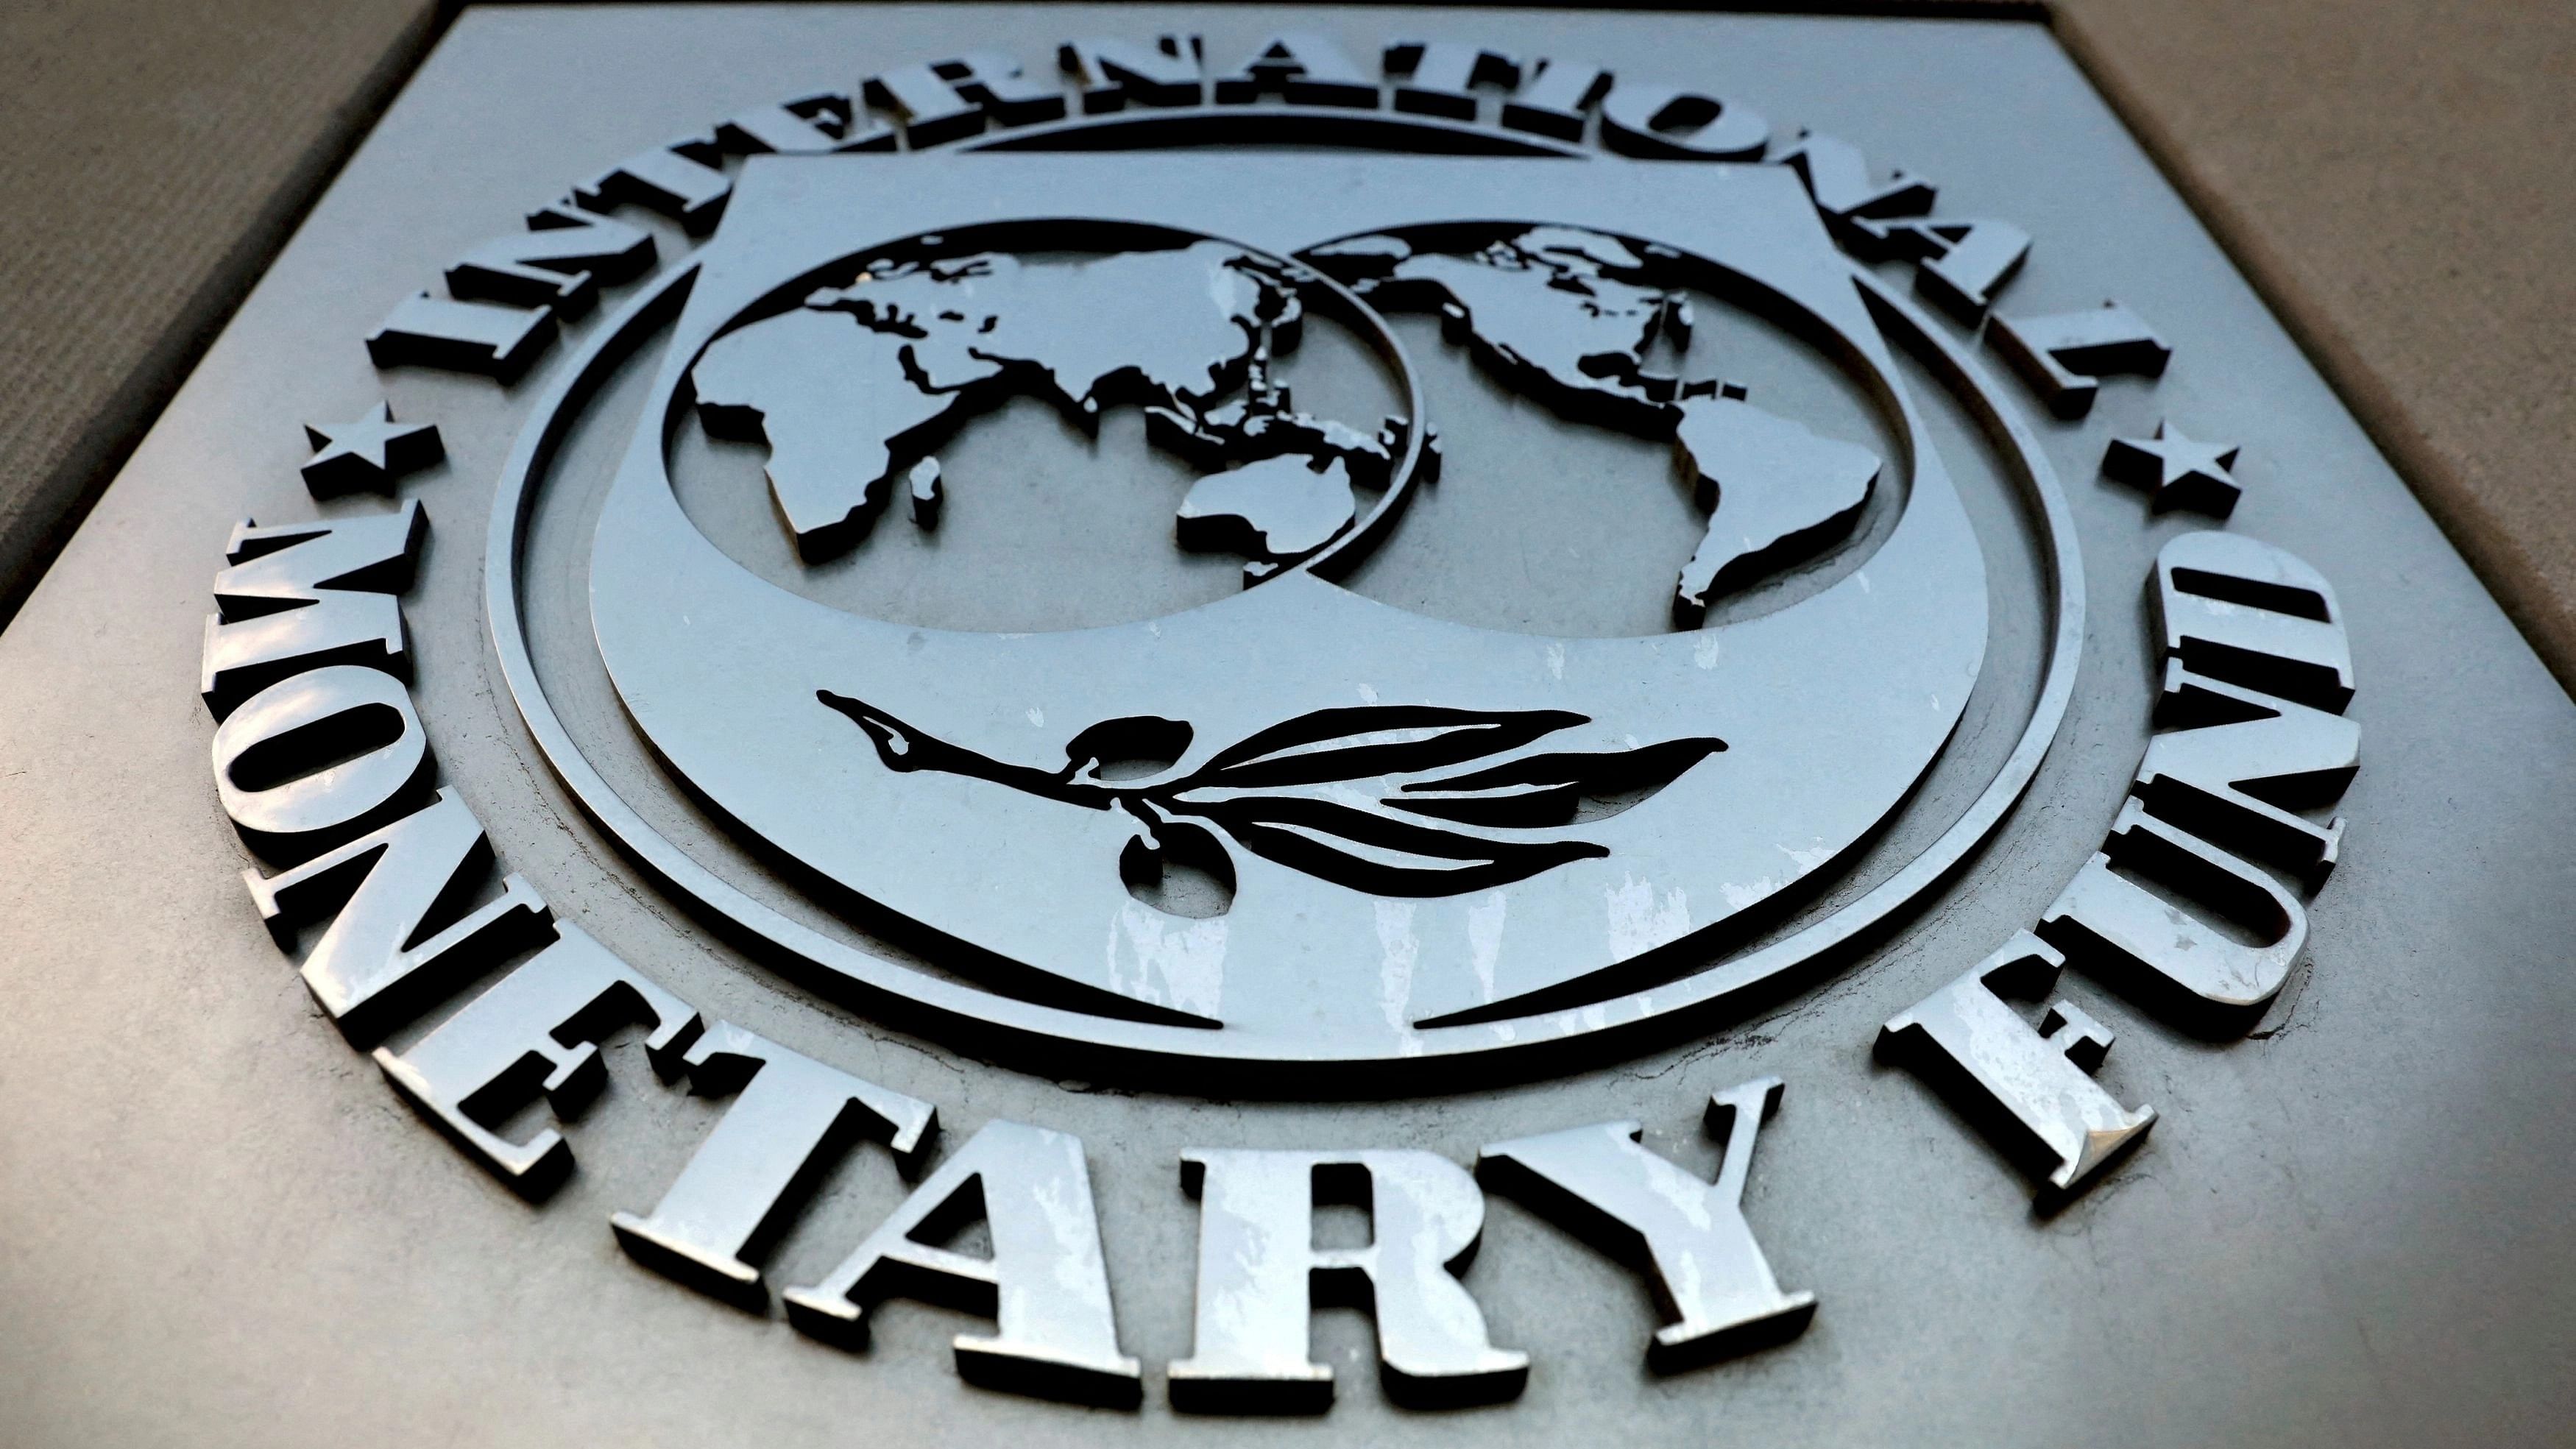 <div class="paragraphs"><p>The International Monetary Fund (IMF) logo.</p></div>